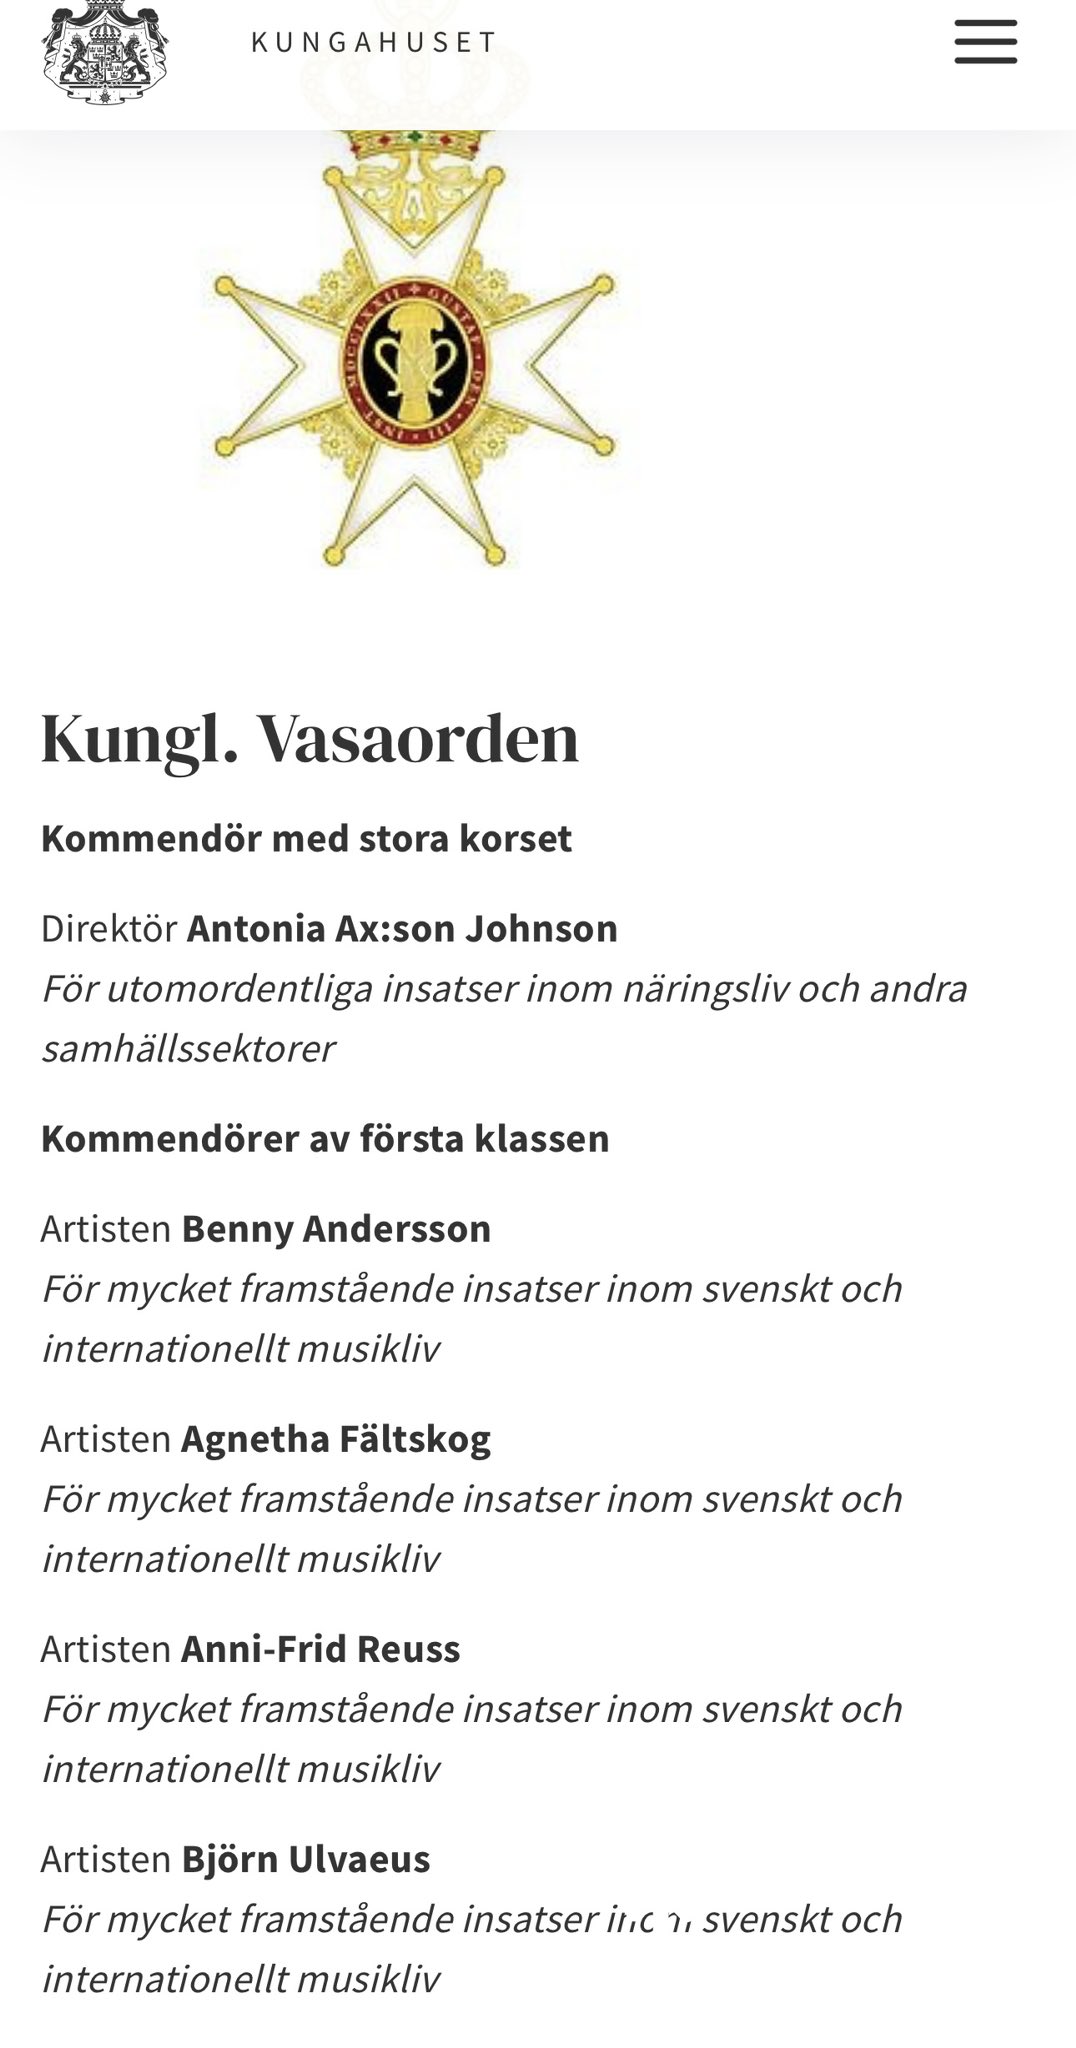 Anuncio de la condecoración en la págna web de la Casa Real sueca. 